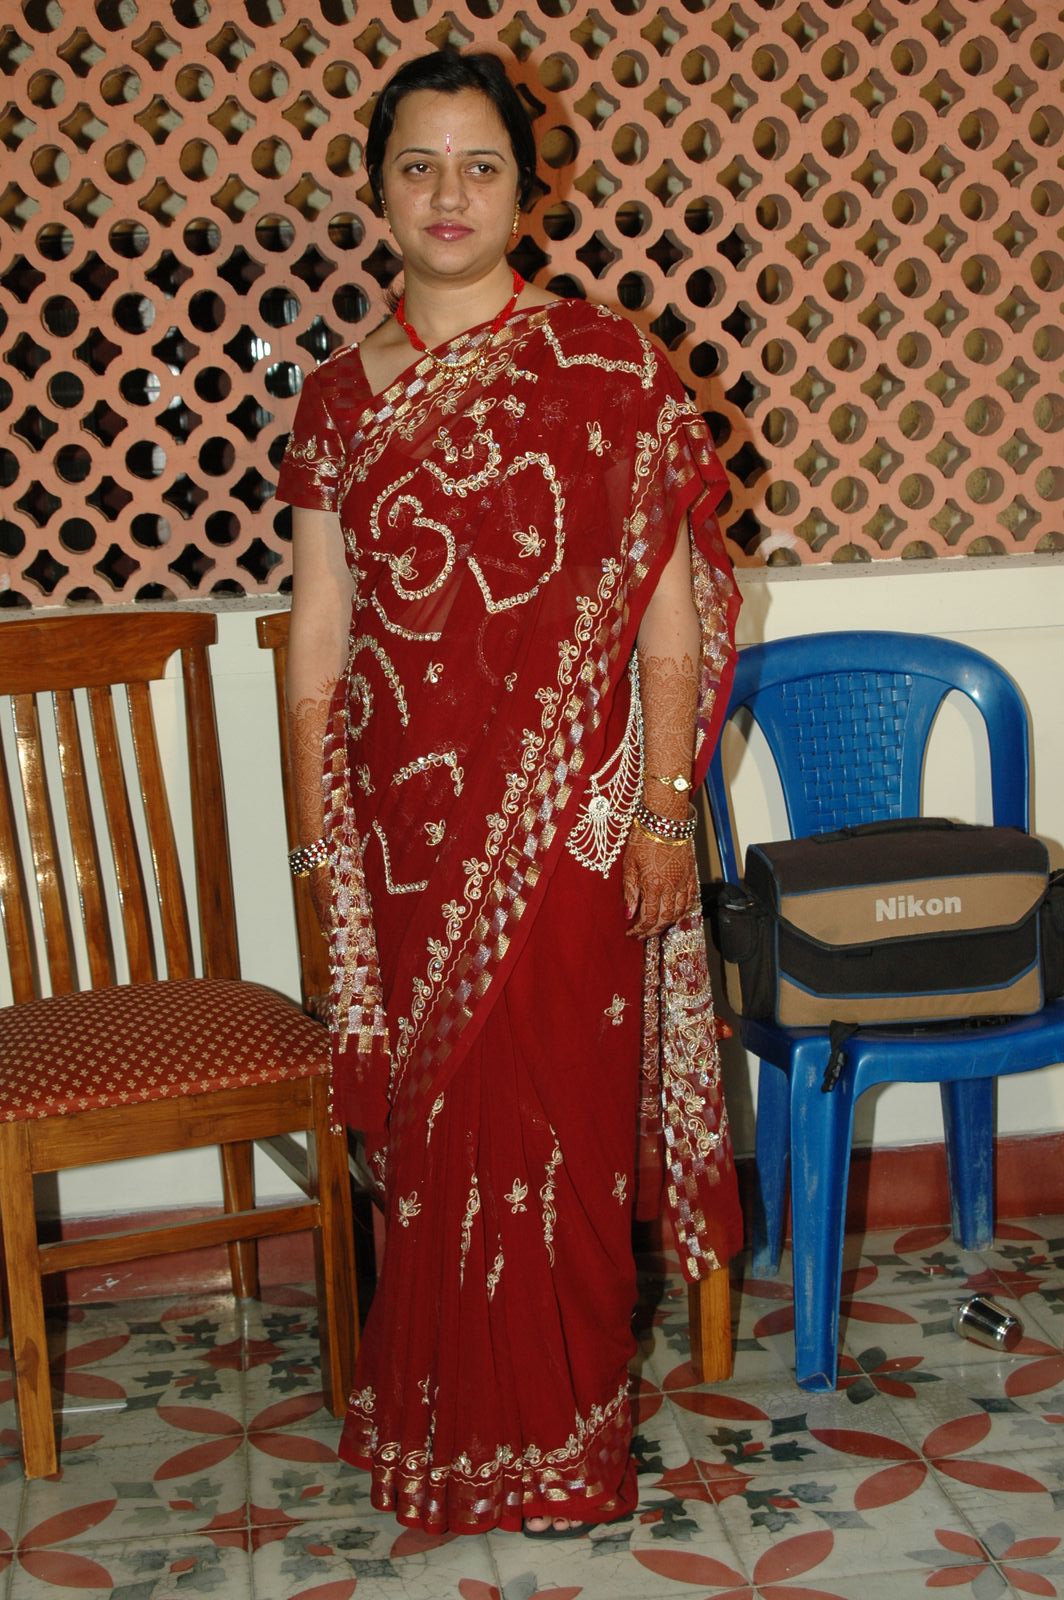 sari Indian mature